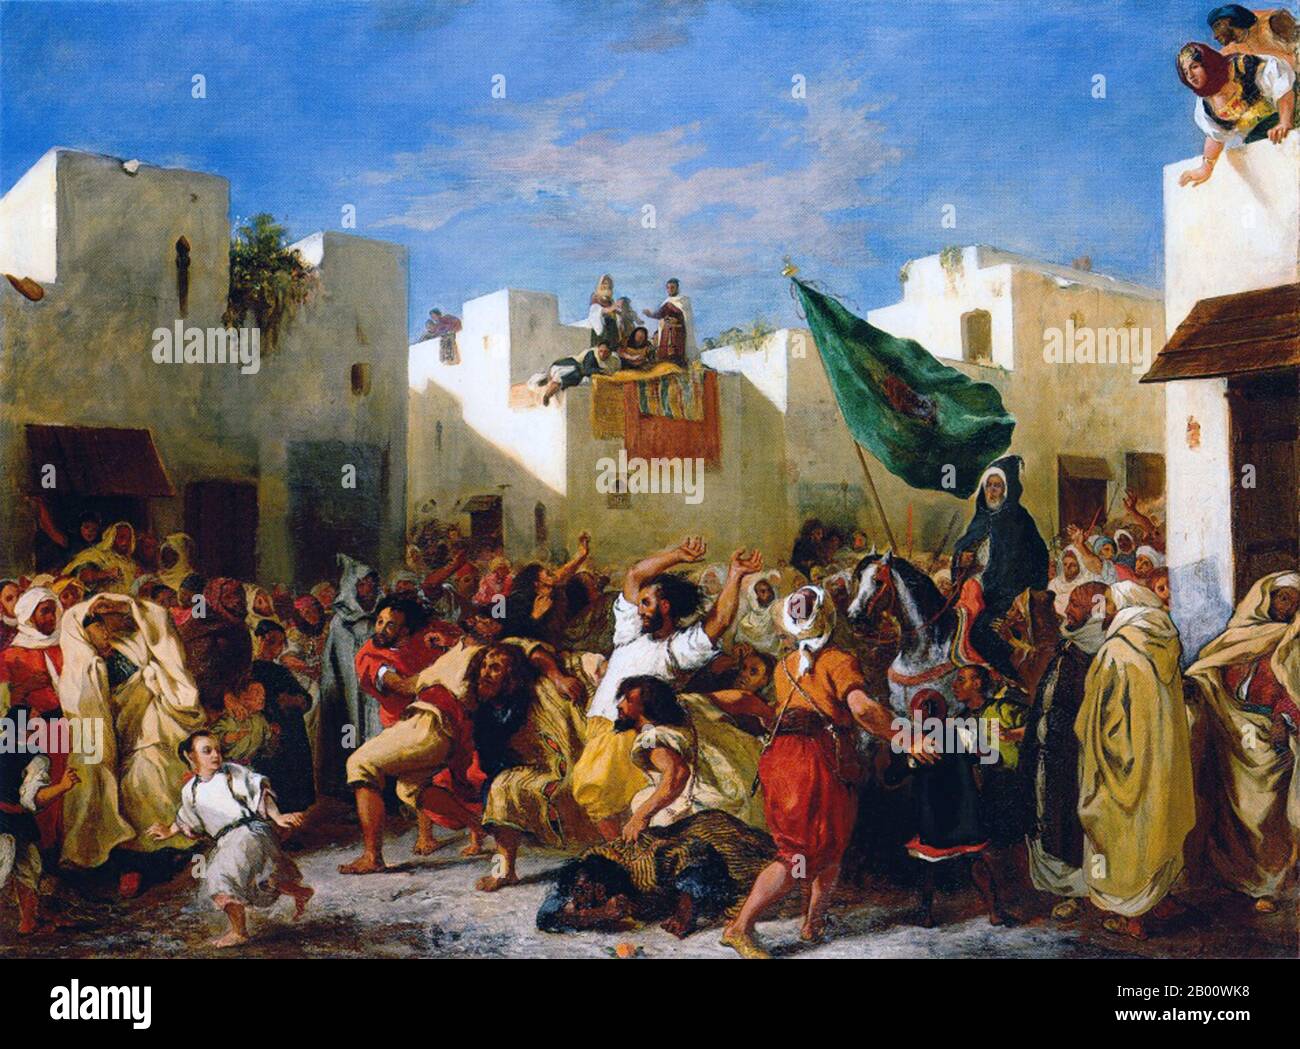 Maroc: 'Les fanatiques de Tanger'. Peinture à l'huile sur toile par Eugene Delacroix (1798-1863), 1838. Ferdinand Victor Eugène Delacroix (26 avril 1798 - 13 août 1863) est le maître reconnu de l'école romantique française. En 1832, il se rend en Afrique du Nord avec l'ambassadeur de France, le comte de Mornay, qui négociera un traité d'amitié avec le sultan marocain. Un jour à Tanger, les deux se sont cachés dans un grenier et à travers les fissures d'une fenêtre à volets ont été témoins de la frénésie des Aïssaouas, 'une secte musulmane fanatique'. L'Aissawa est une fraternité religieuse et mystique. Banque D'Images